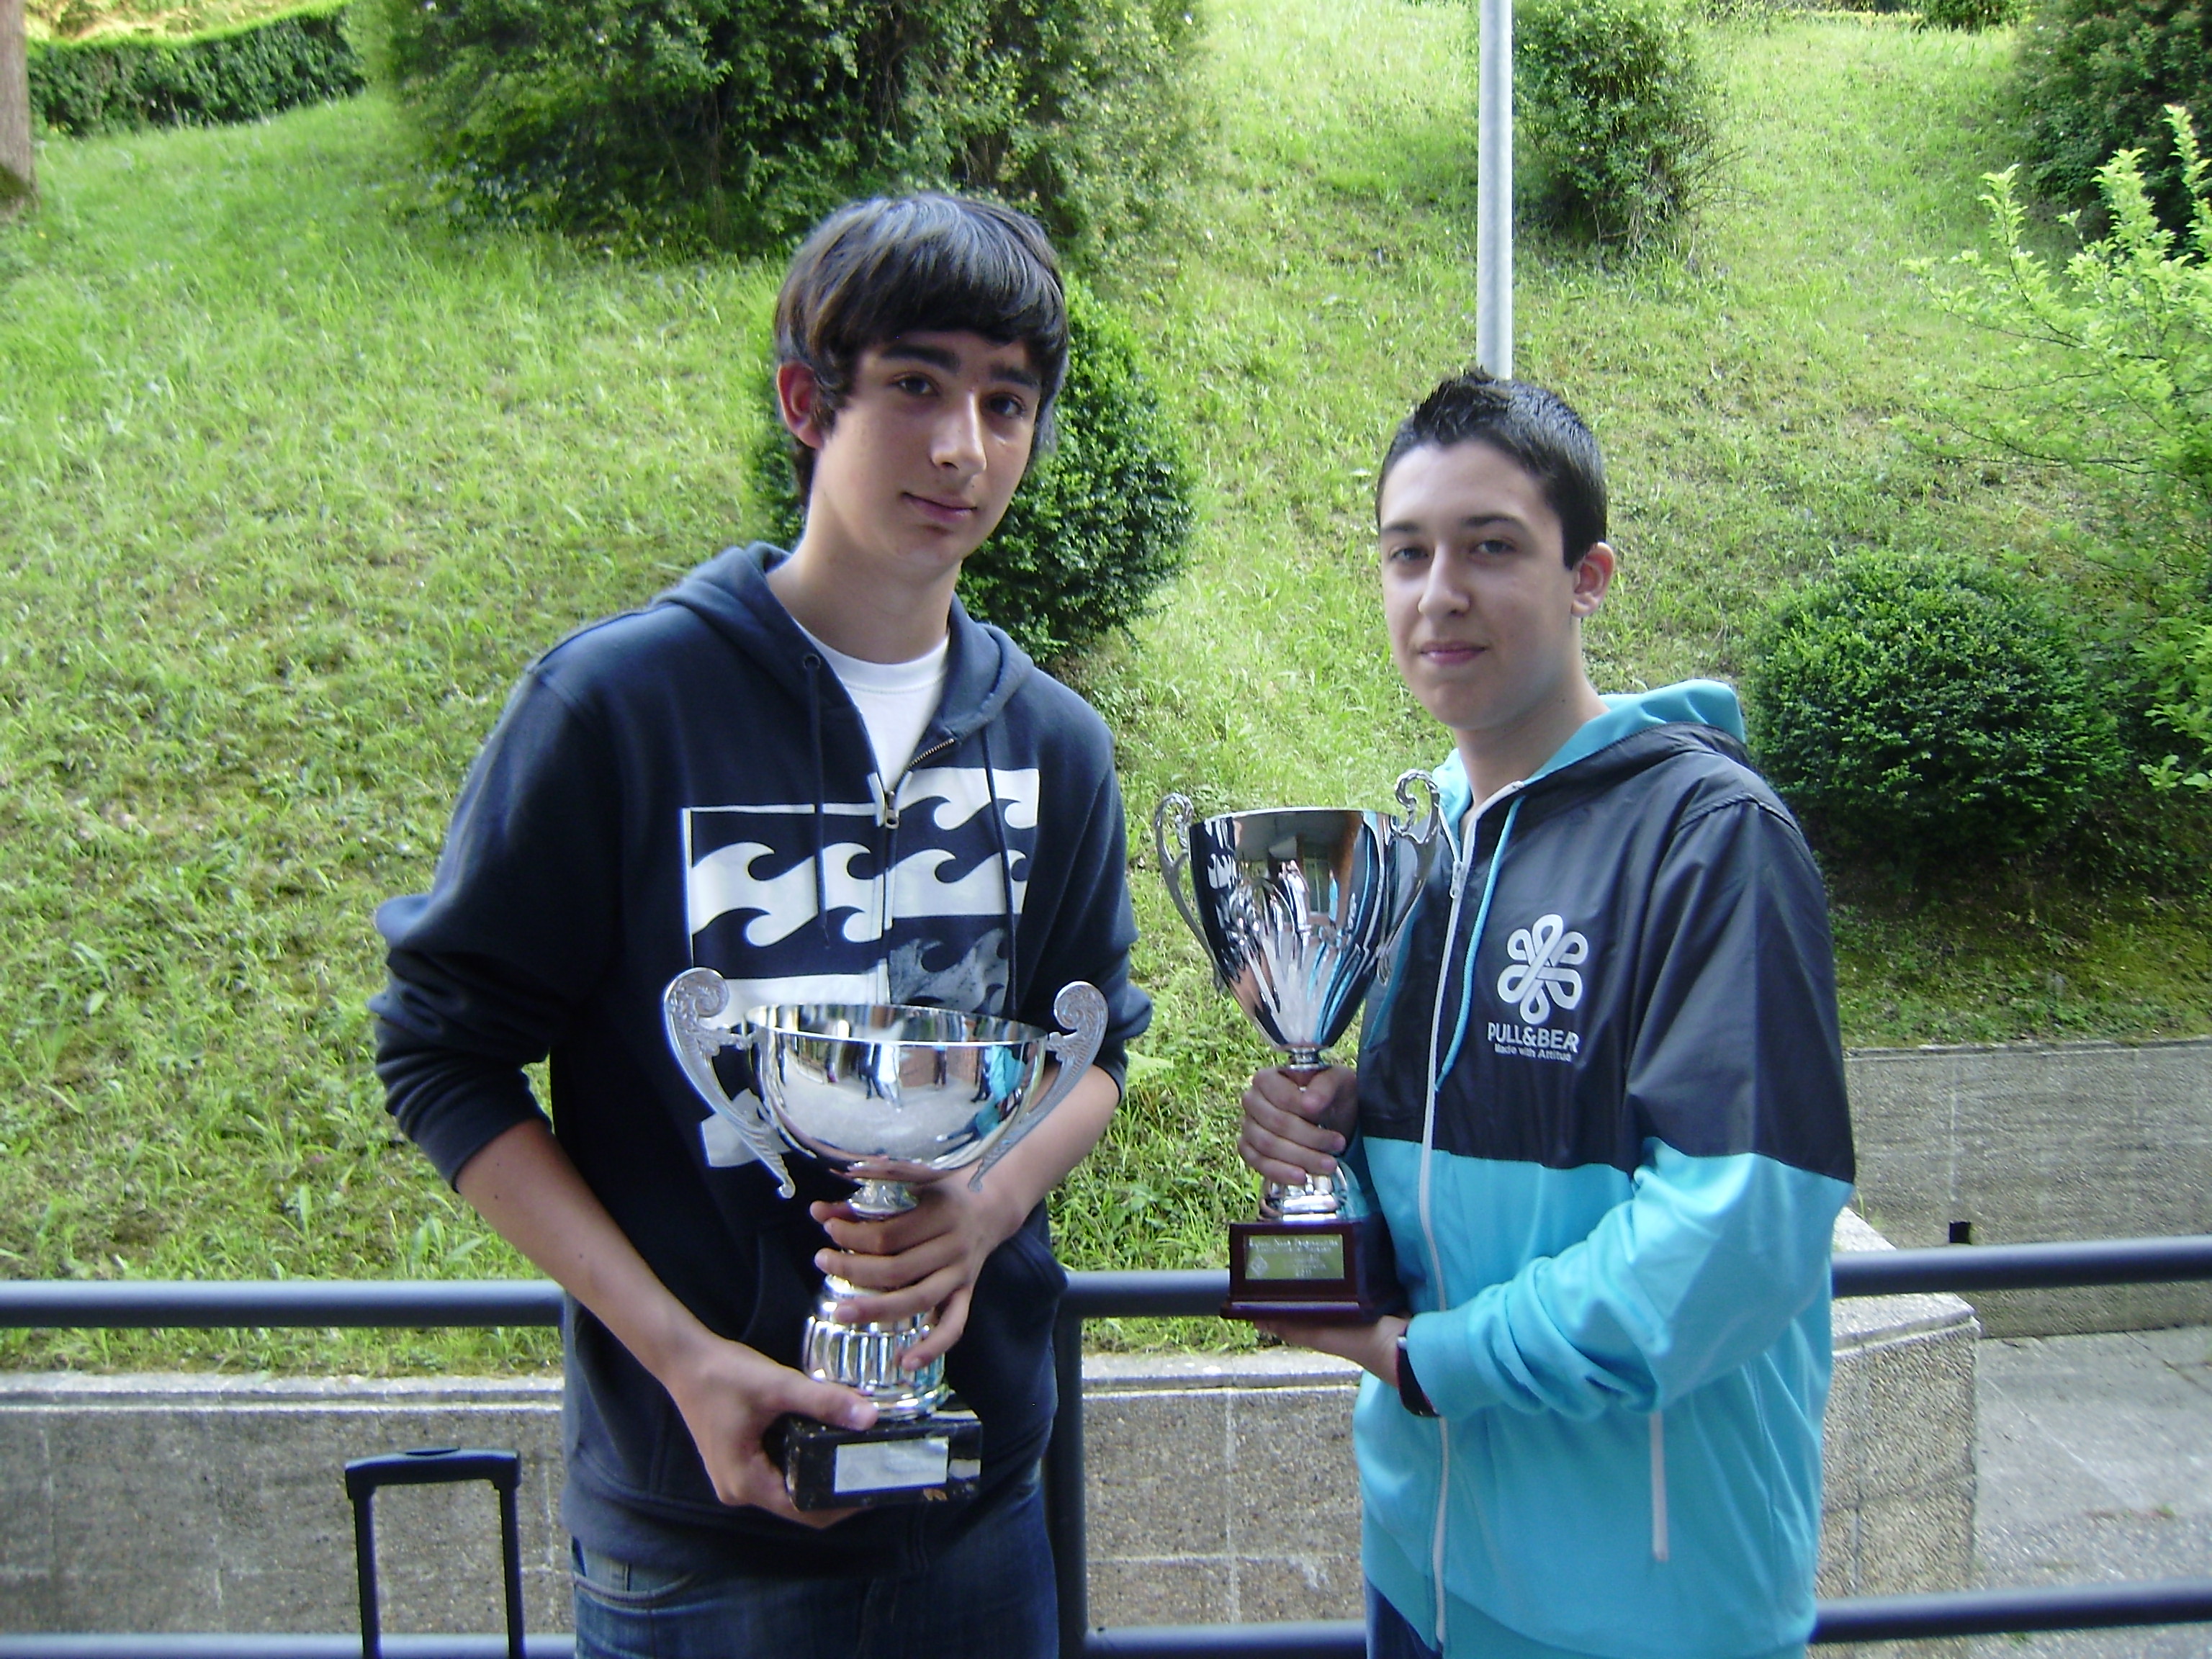 Pablo Urriza y Luis David Jimenez, Campeones de Euskadi de Ajedrez